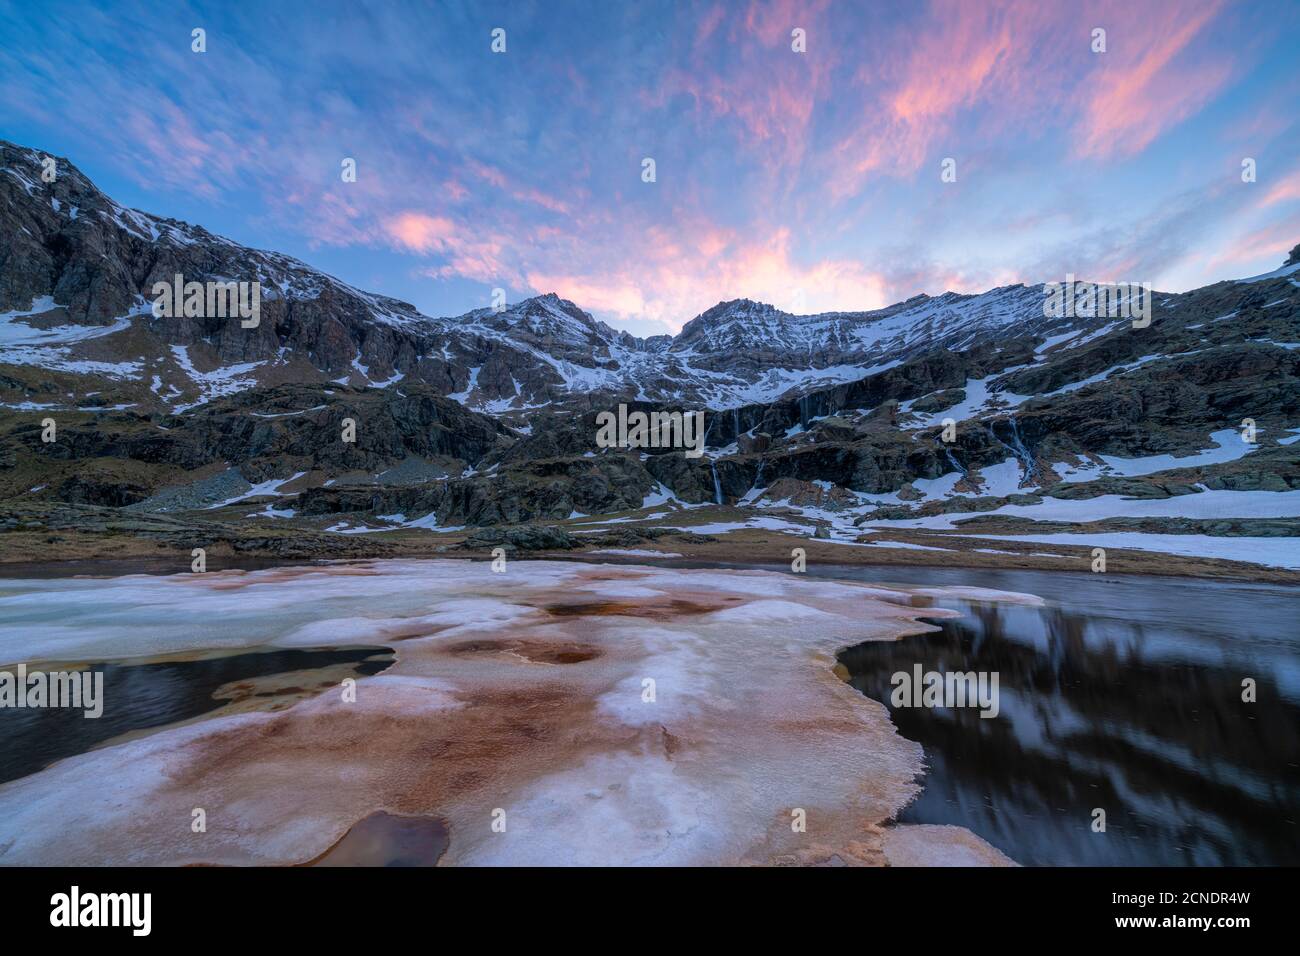 Fonte de glace pendant le dégel à l'aube, Alpe Fora, Valmalenco, province de Sondrio, Valtellina, Lombardie, Italie, Europe Banque D'Images